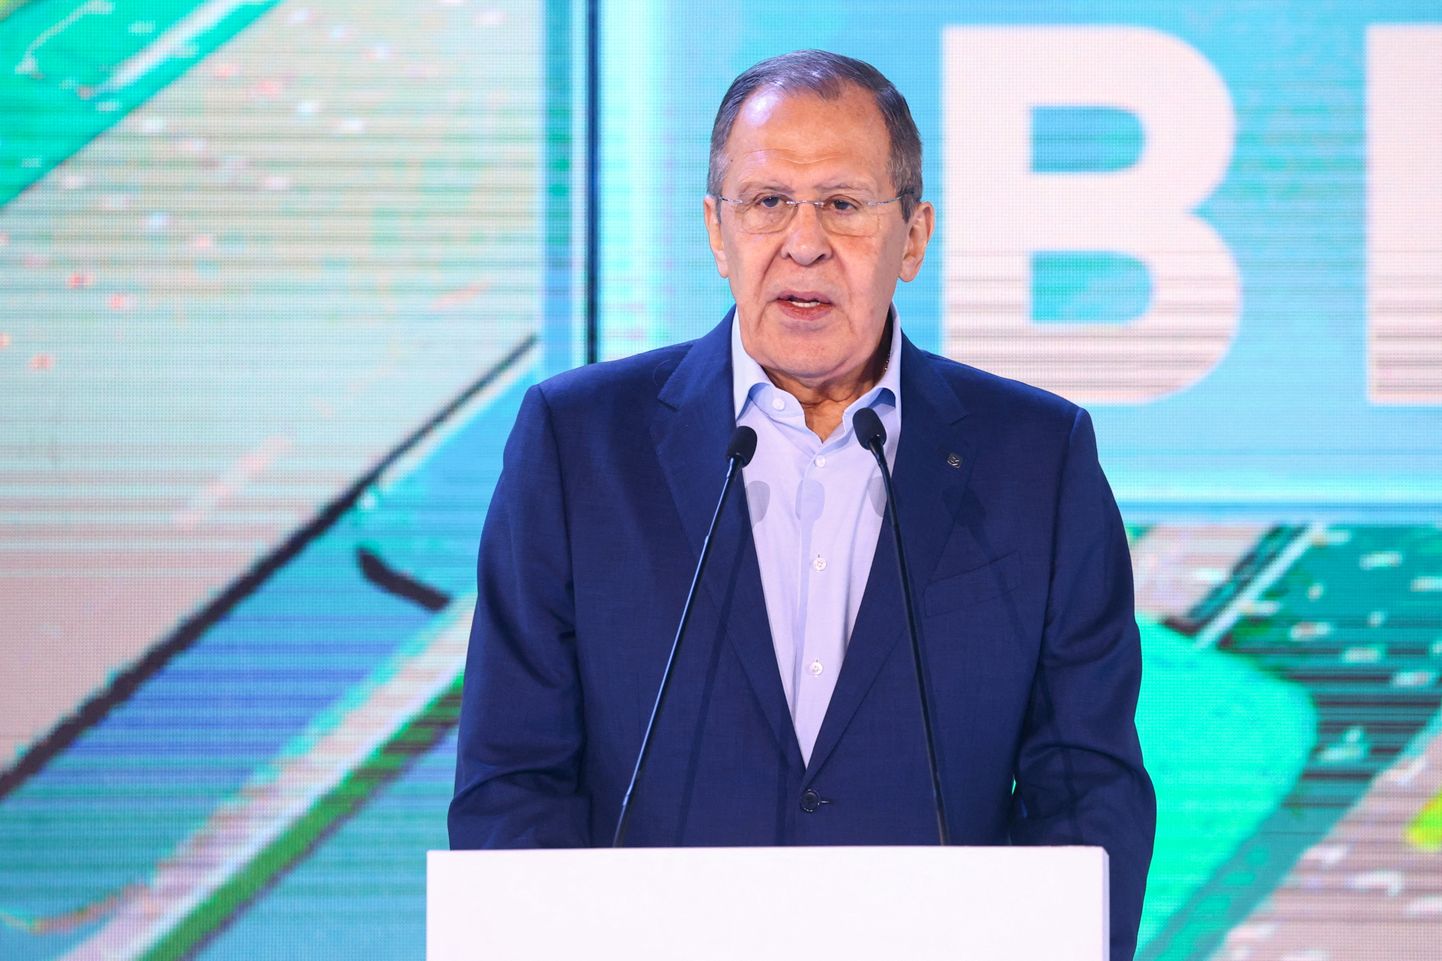 Vene välisminister Sergei Lavrov pidamas 17. mail 2022 kõnet Moskvas ühingu Znanie (Teadmine) sündmusel